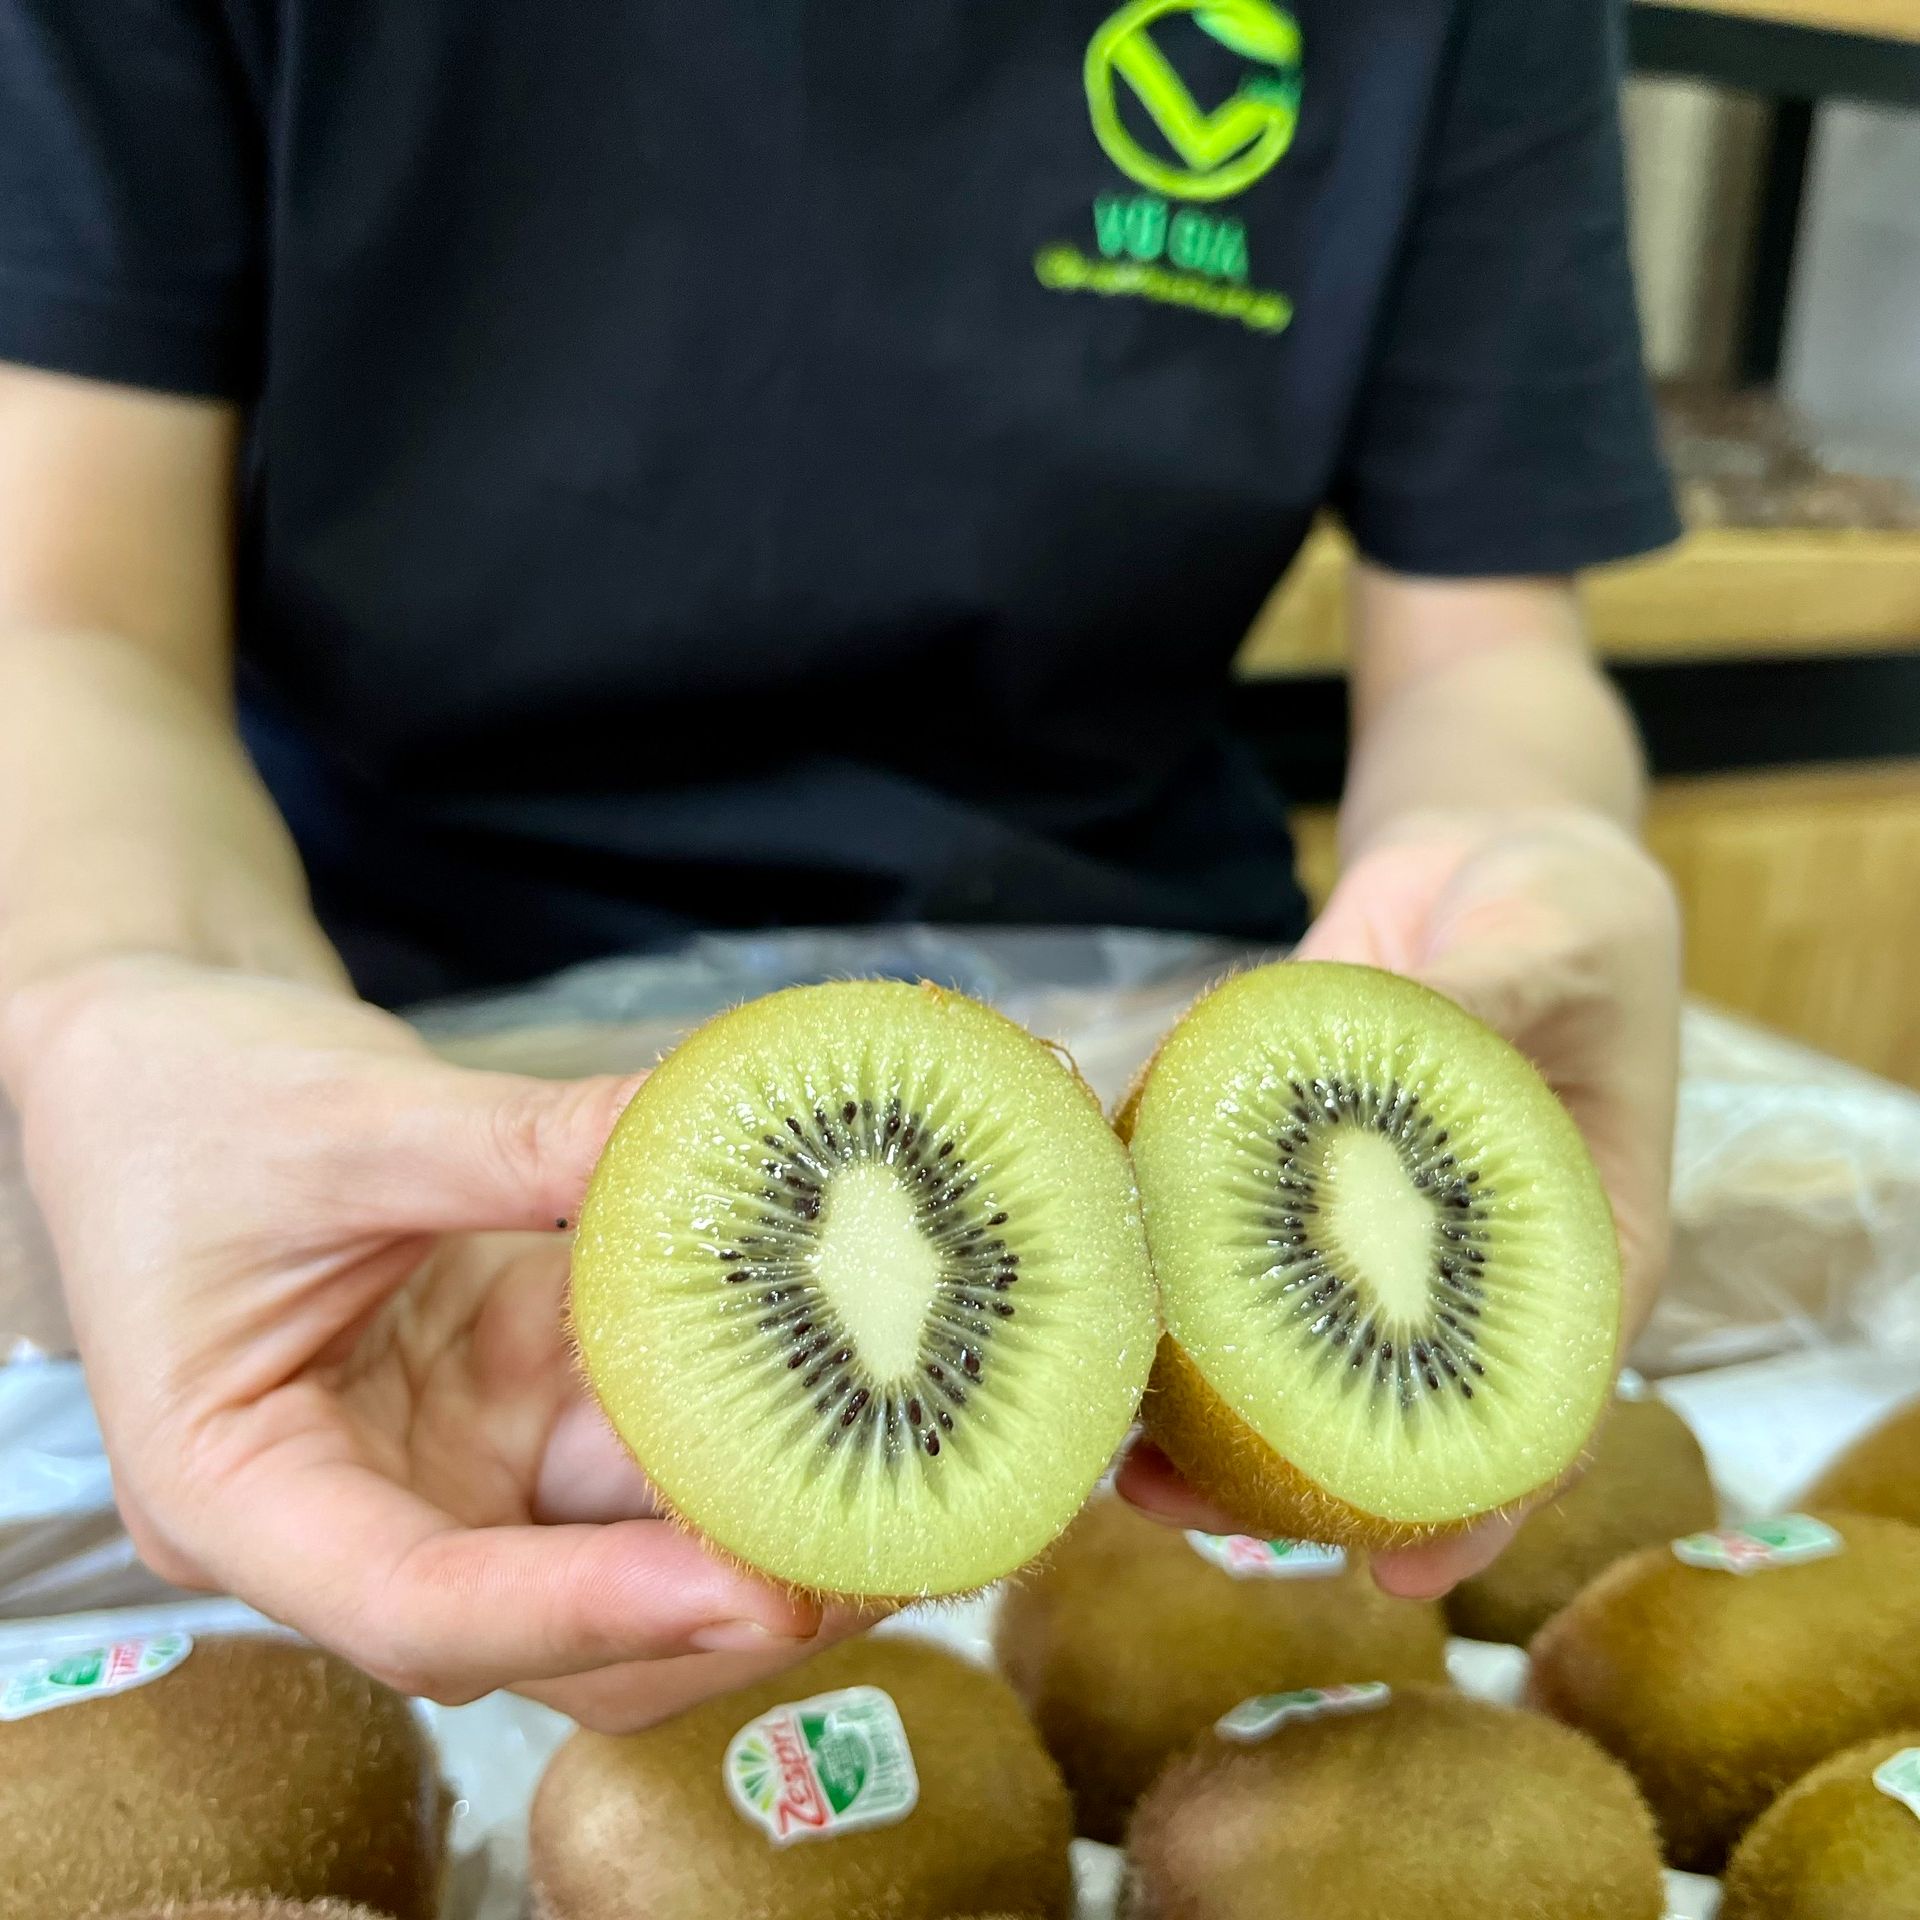 VG FARM Kiwi Xanh Zespri New Zealand - ngọt thanh mát, trái cứng đanh